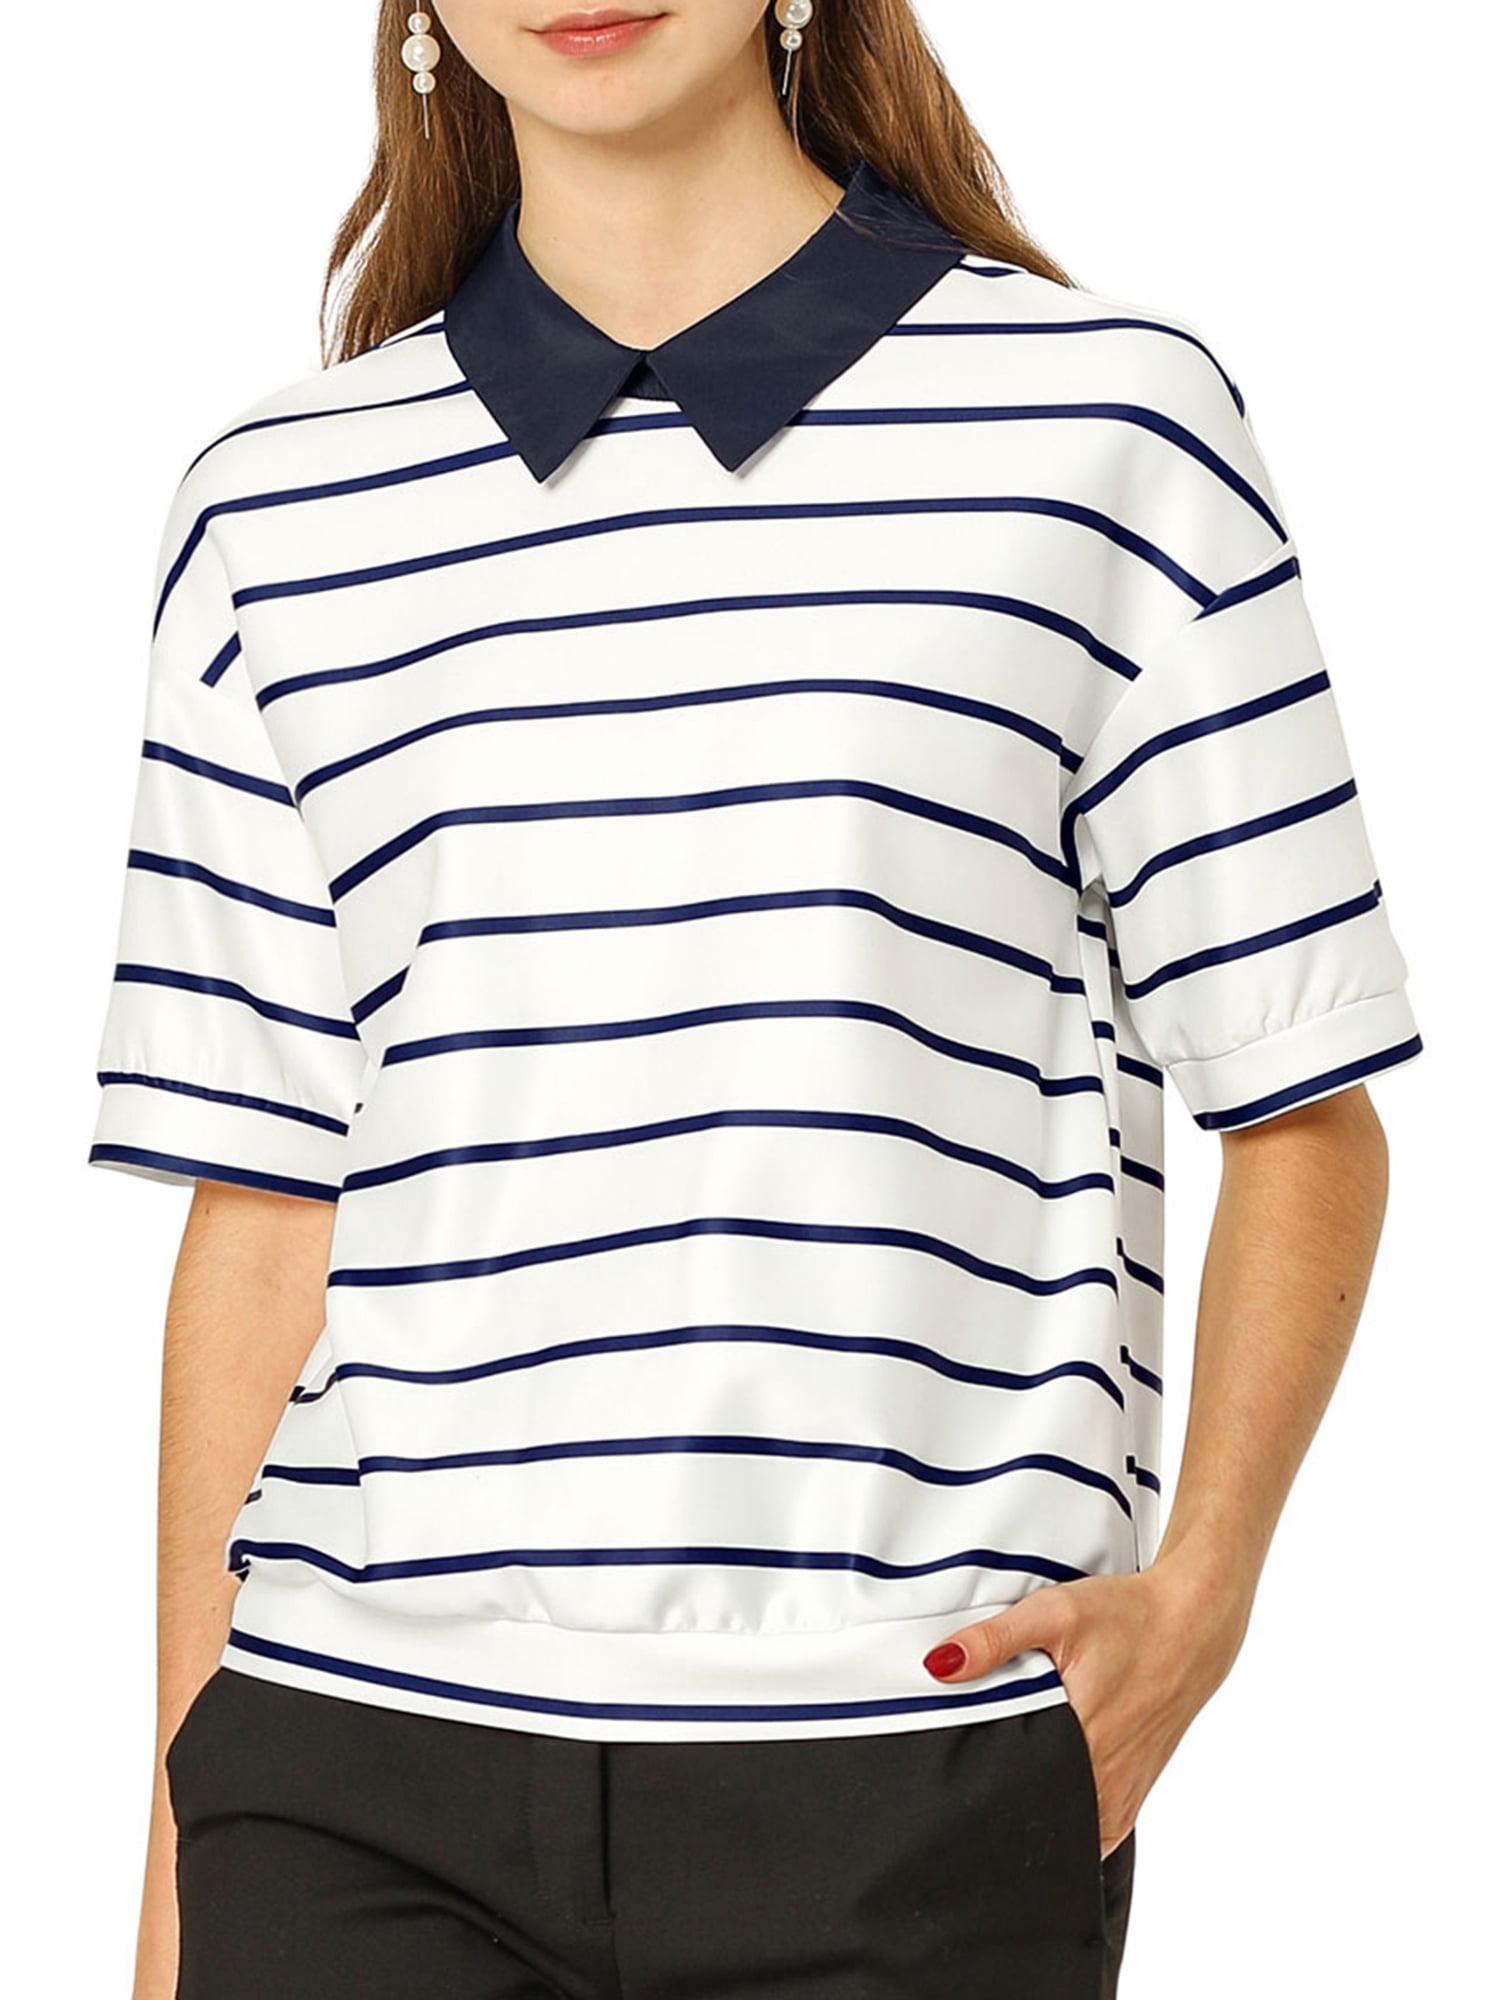 Unique Bargains - Women's Striped Short Sleeve Button Back Polo Shirt M